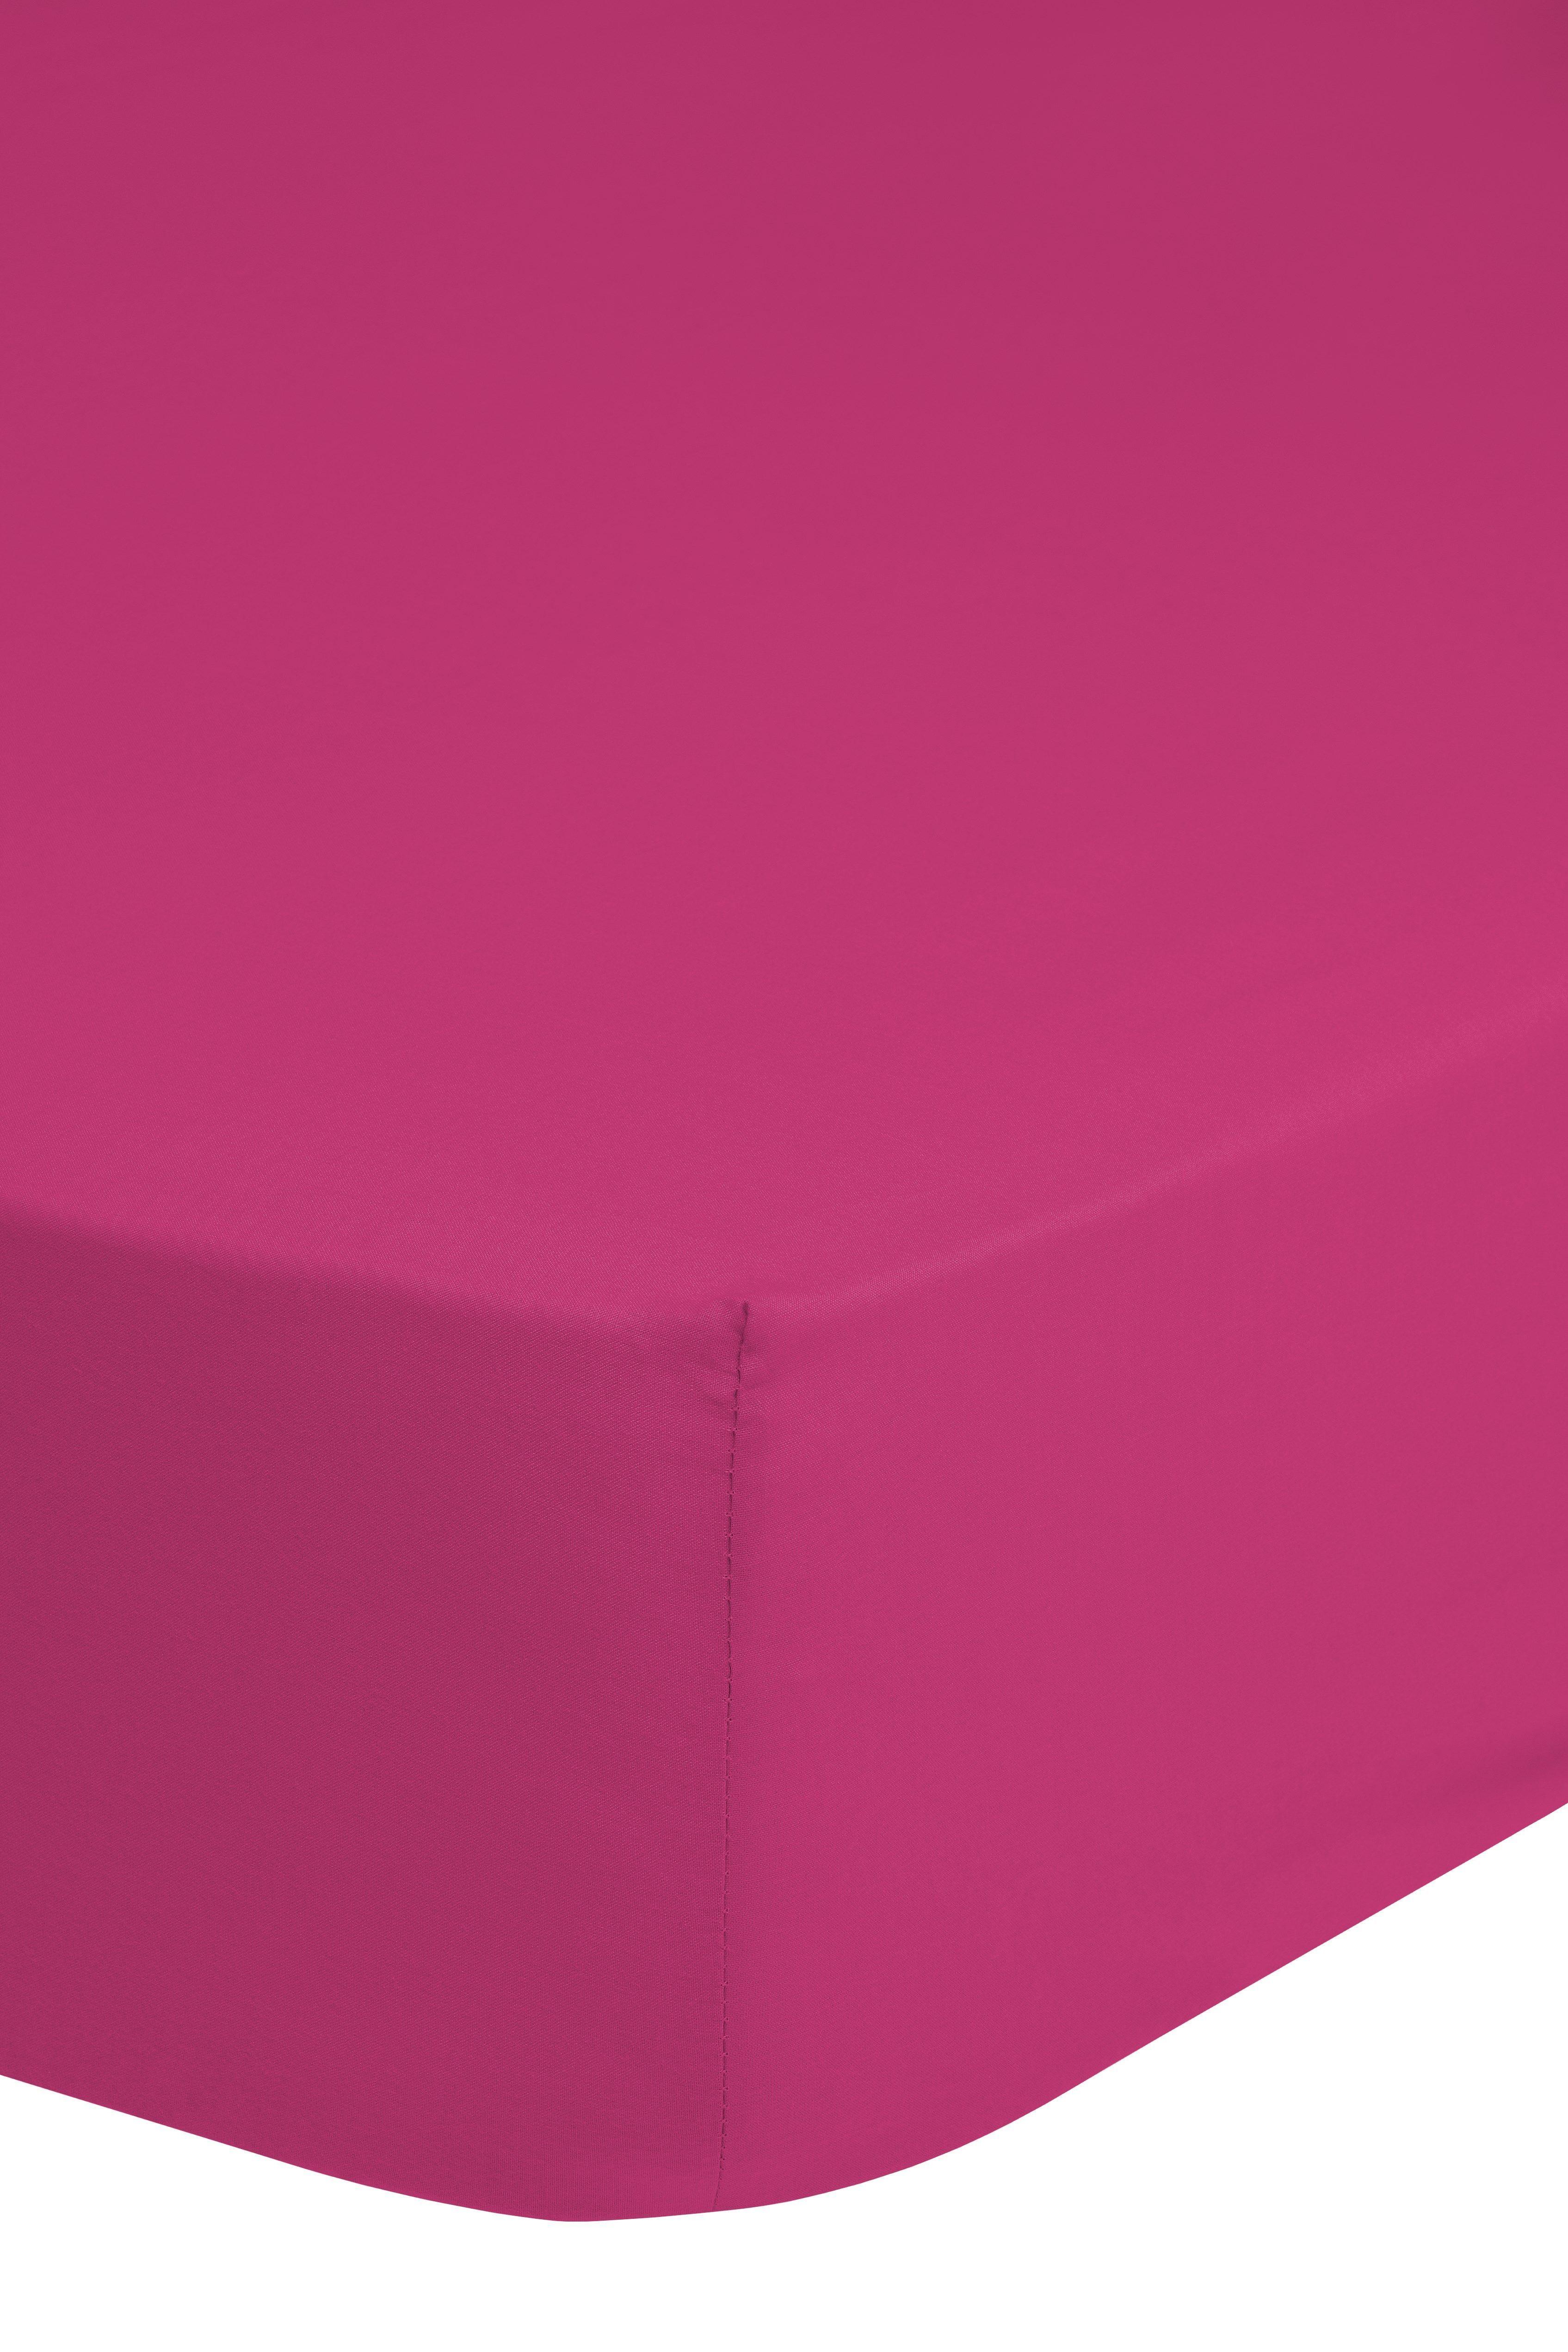 Elastické Prostěradlo Jersey Ca. 140x200cm - pink, Basics, textil (140/200cm) - MID.YOU